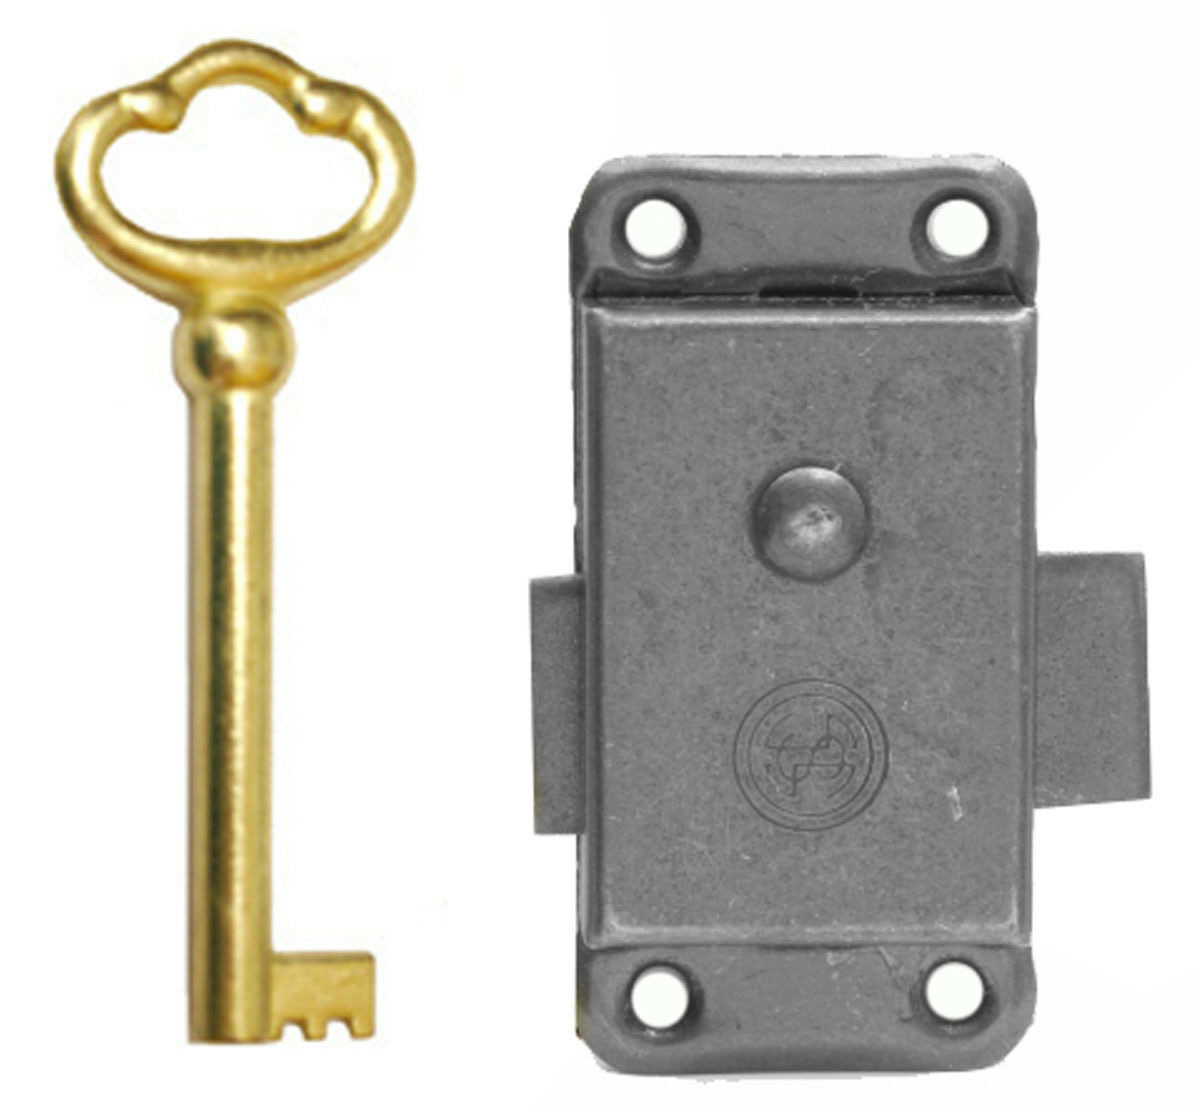 Locks I - Desk Lock Kit